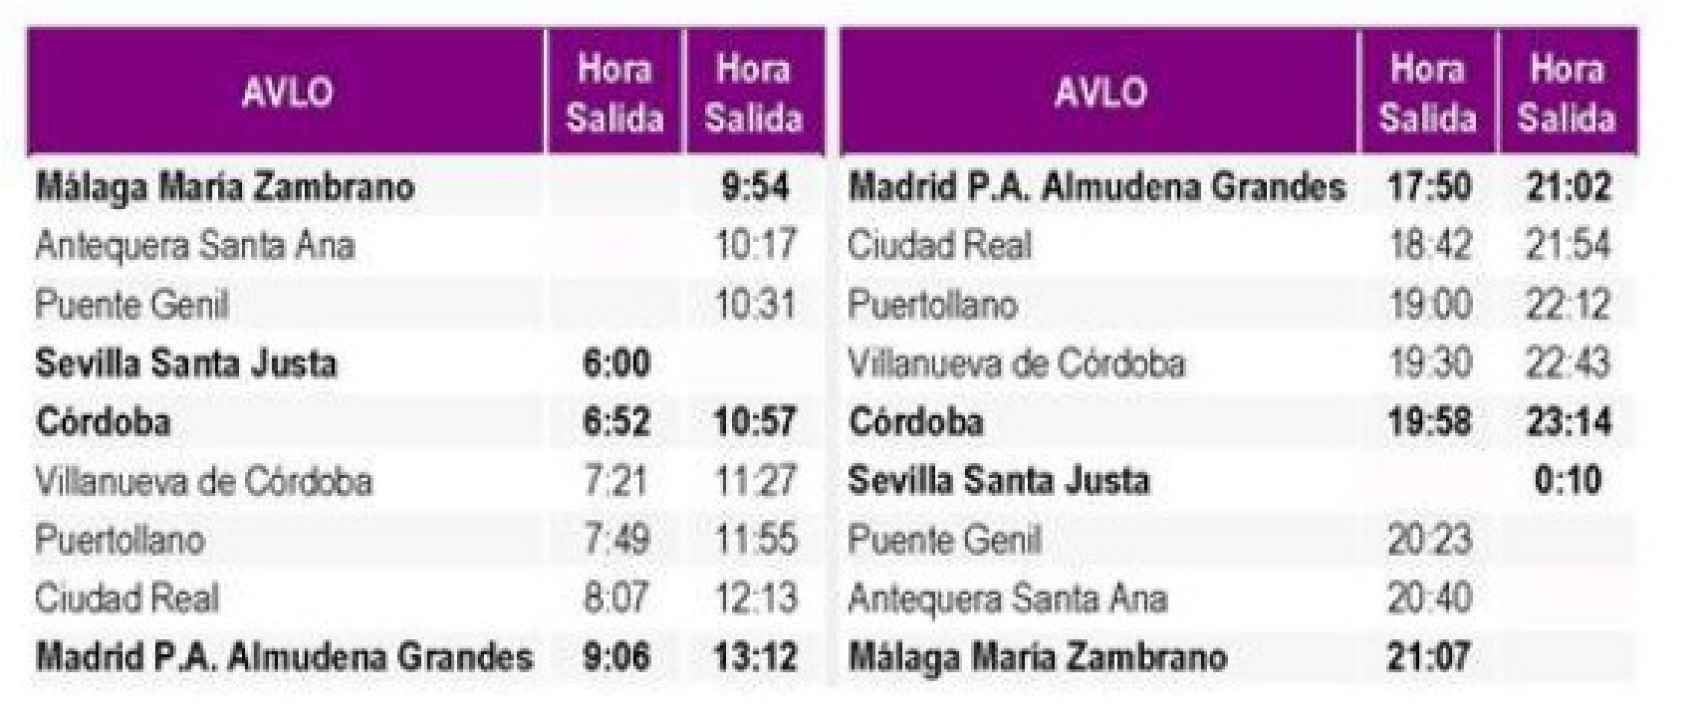 Cuadro de tiempos de salida del AVLO Málaga-Madrid en las diferente estaciones.